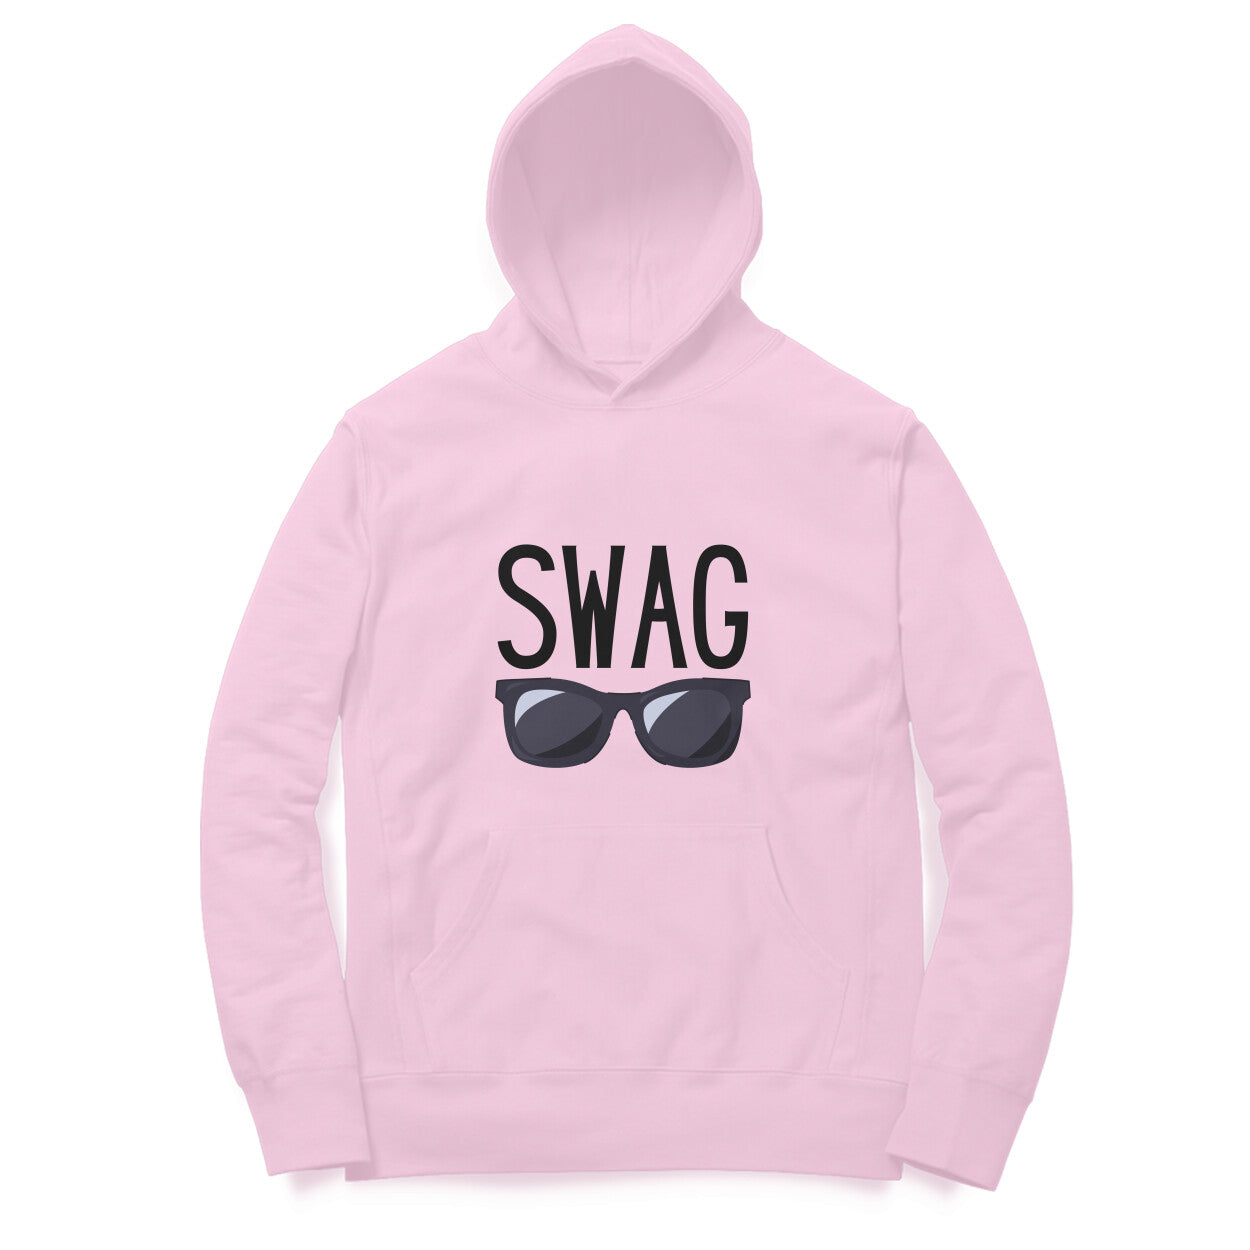 Swag' hoodie